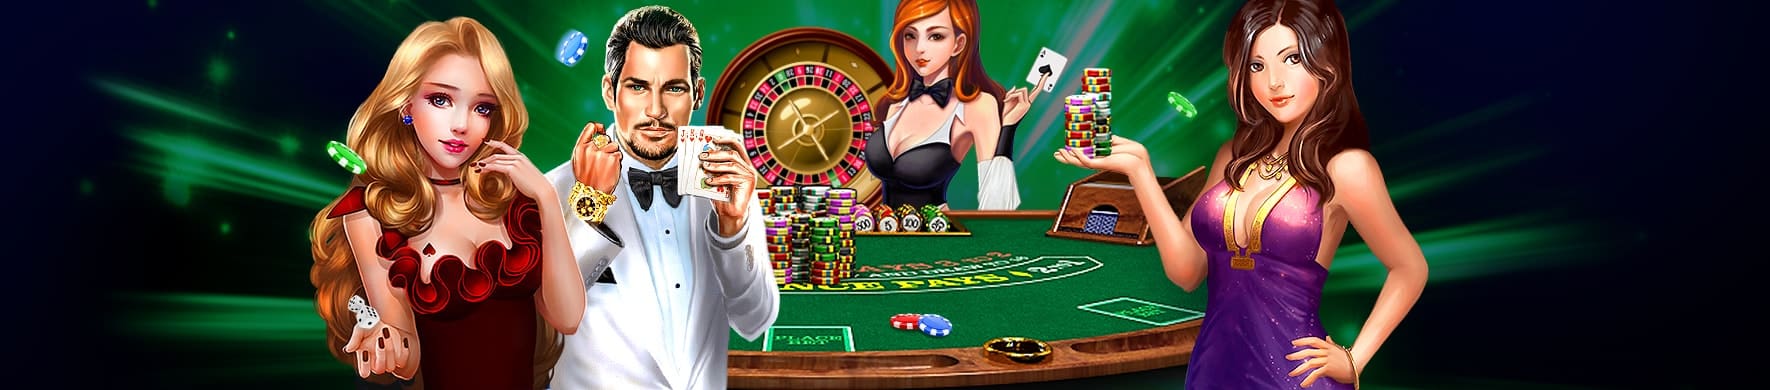 สมัคร ufa-casino